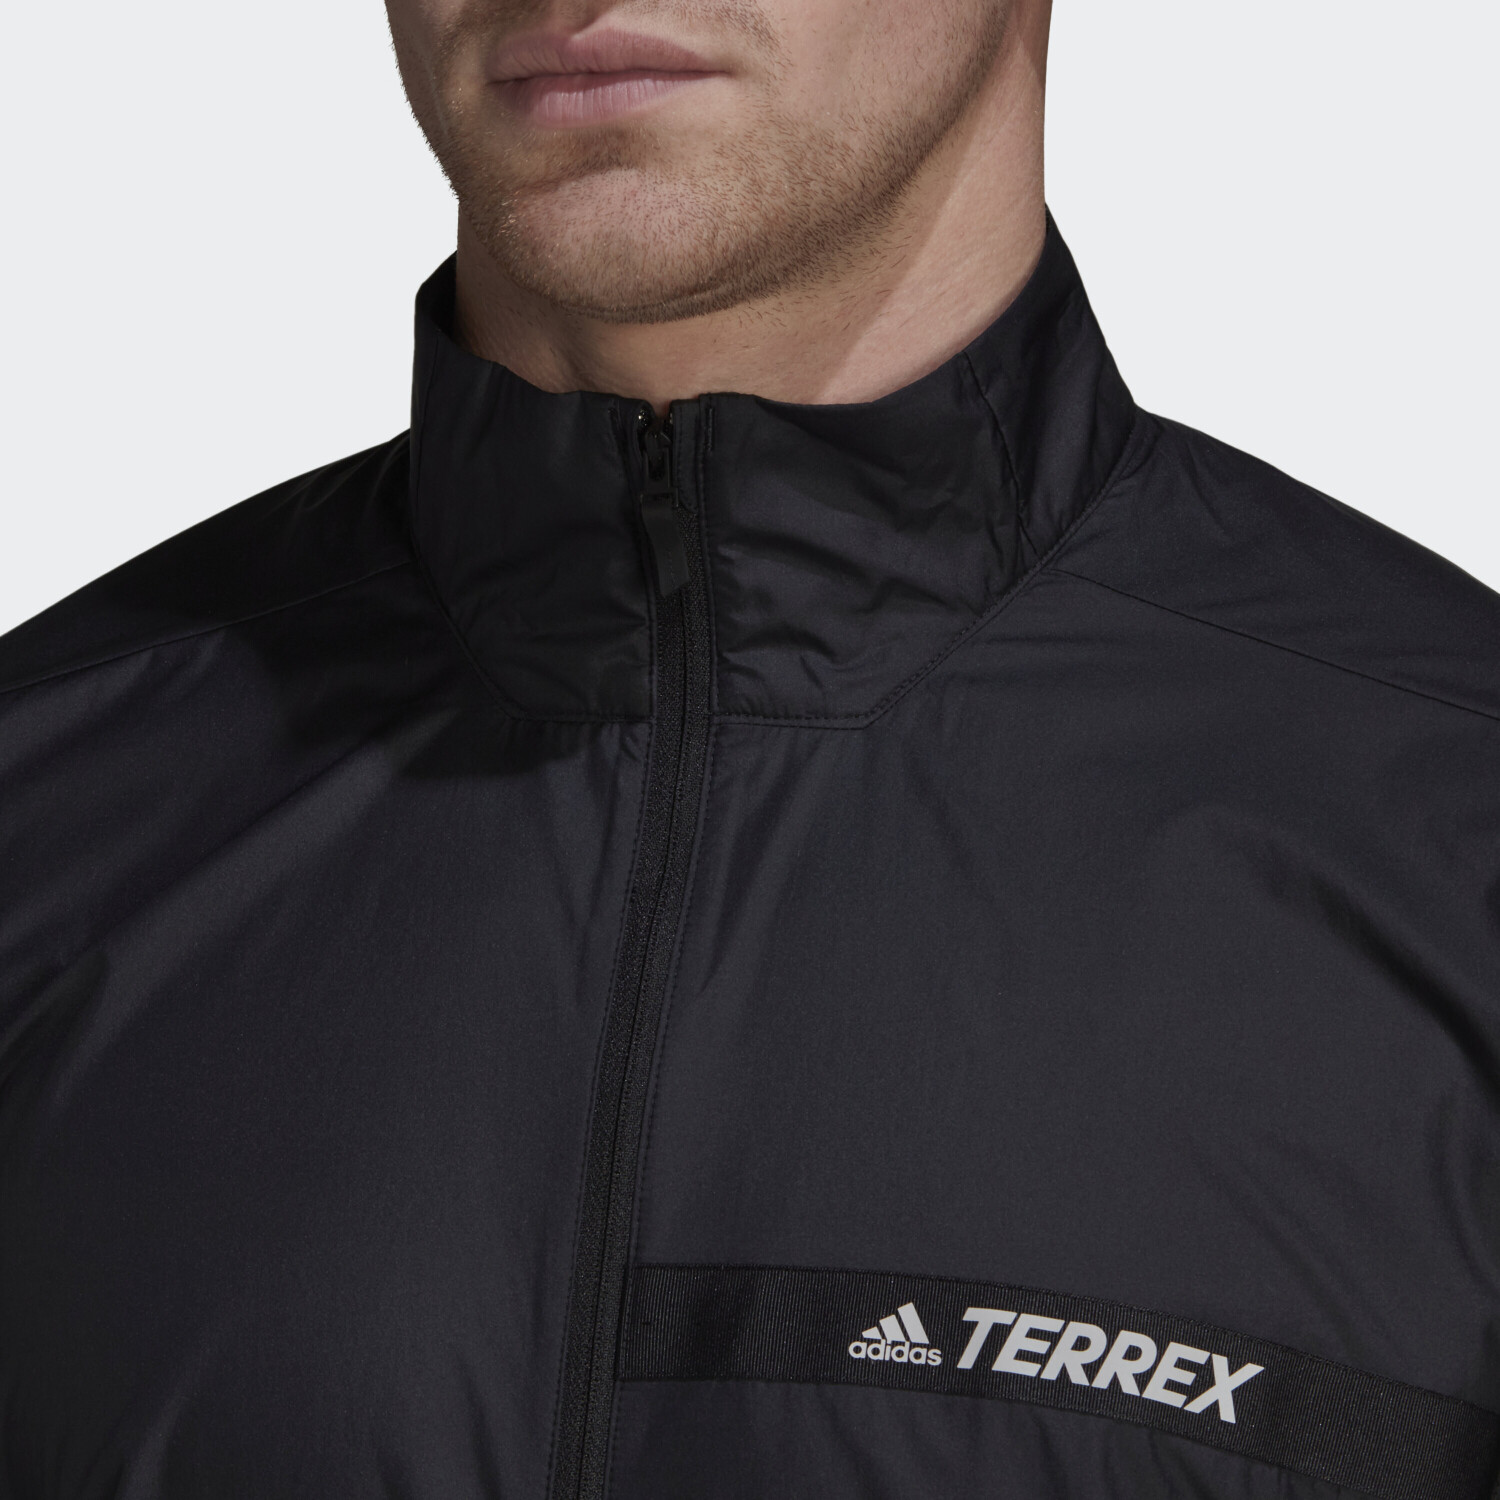 Adidas Terrex Multi Wind Jacket black (H53405) ab 44,65 € | Preisvergleich  bei